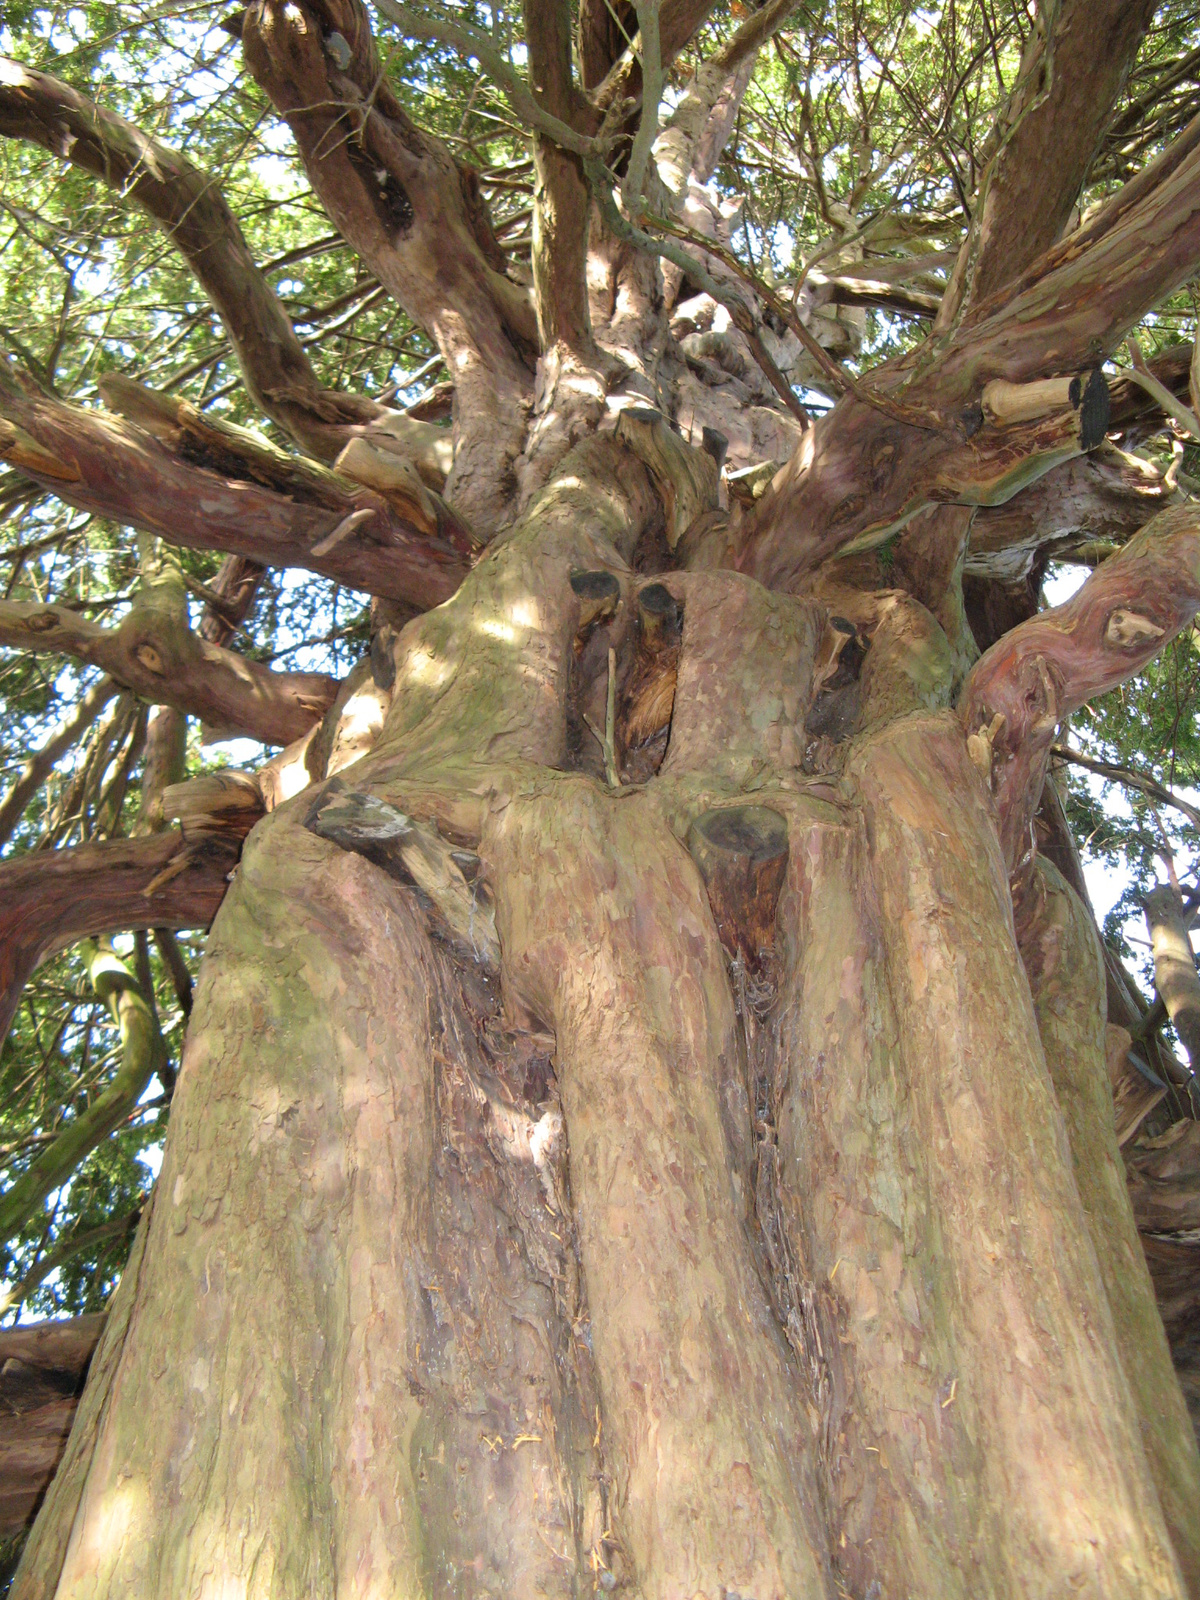 17 Hughenden Manor-i 400 éves fa